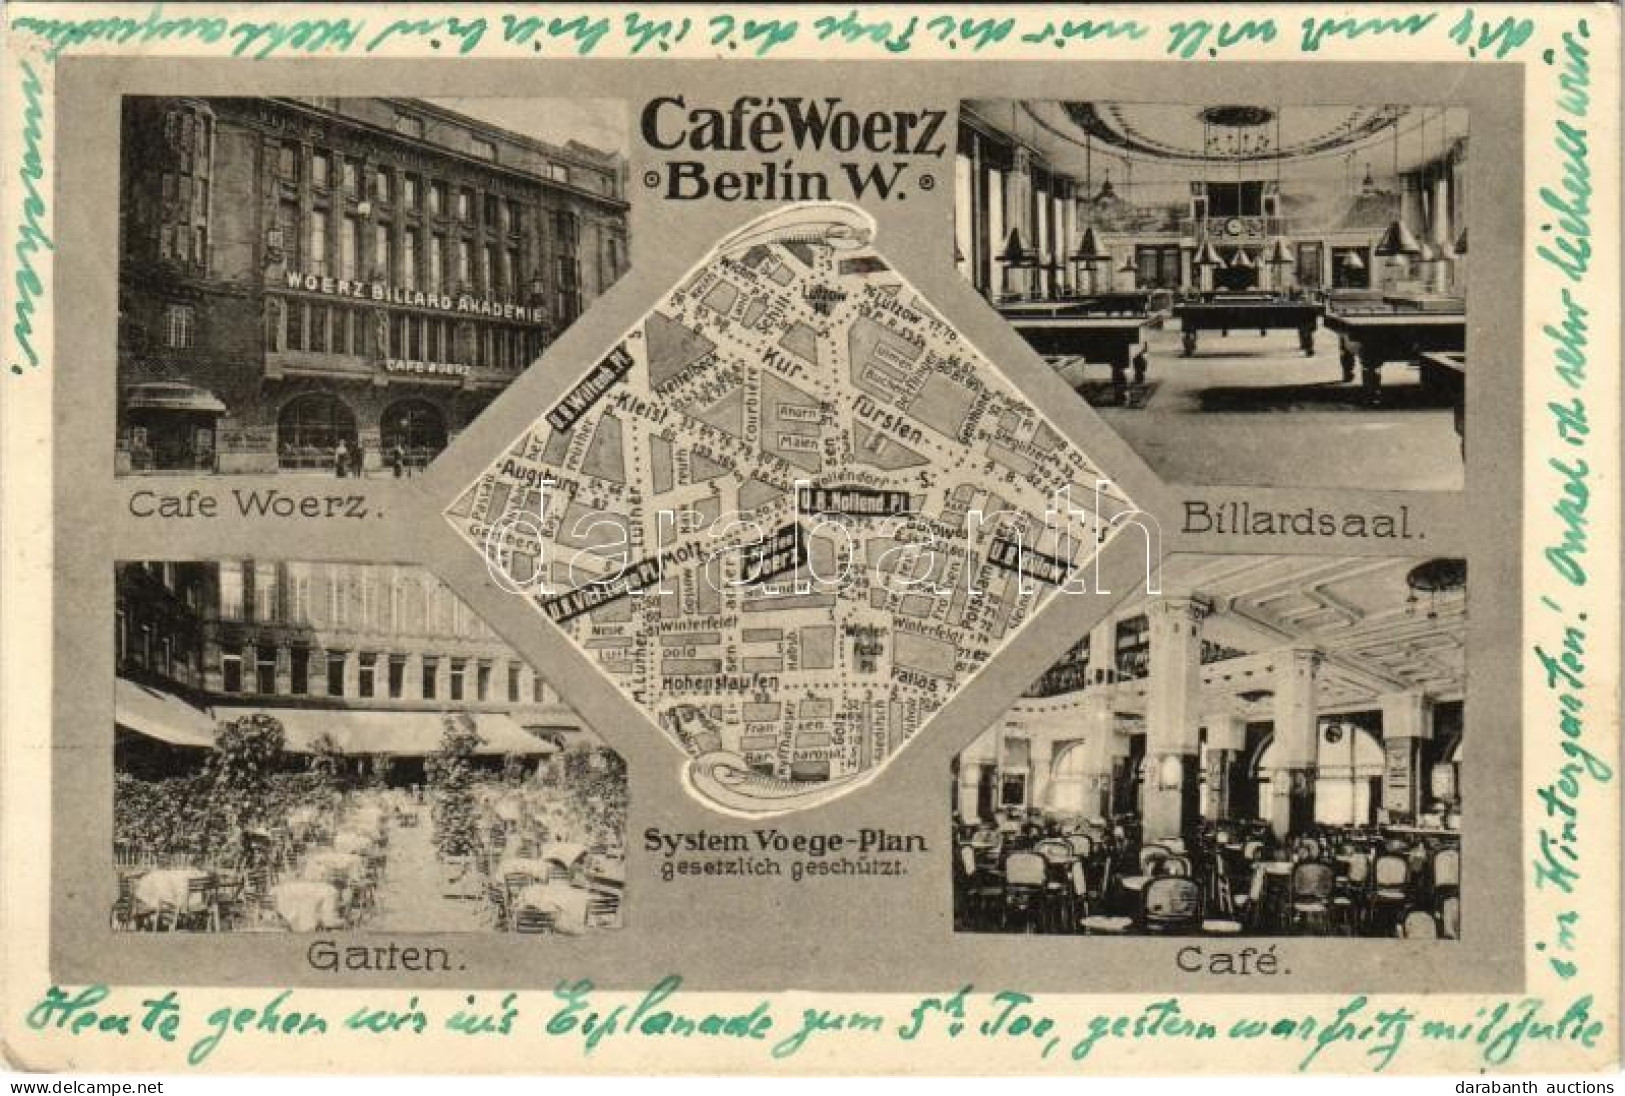 T2 1917 Berlin, Cafe Woerz, Woerz Billard Akademie, Bilardsaal, Garten, Café. System Voege-Plan / Café, Interior, Billia - Unclassified